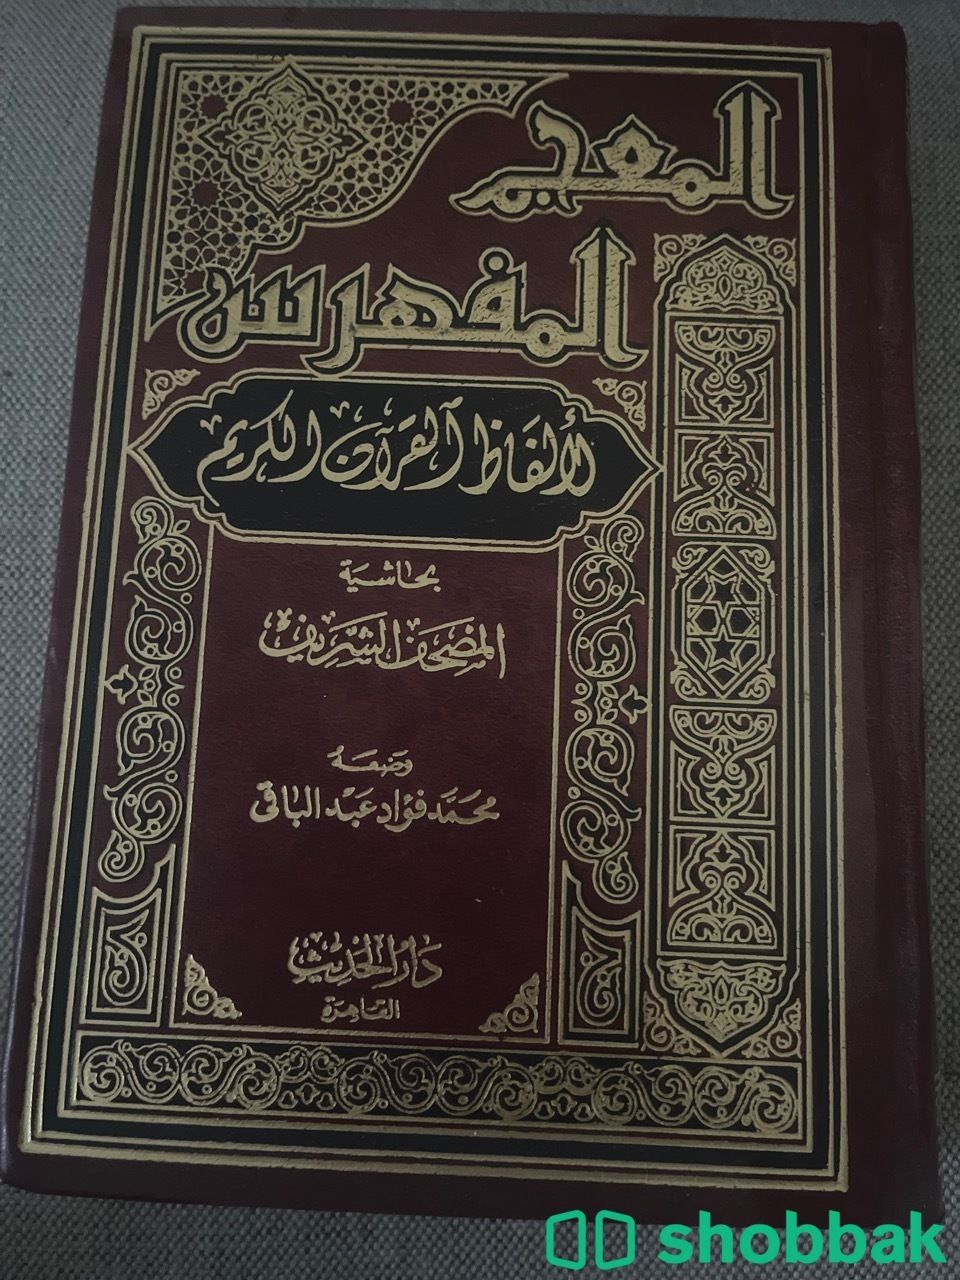 المعجم المفهرس لألفاظ القرآن الكريم شباك السعودية